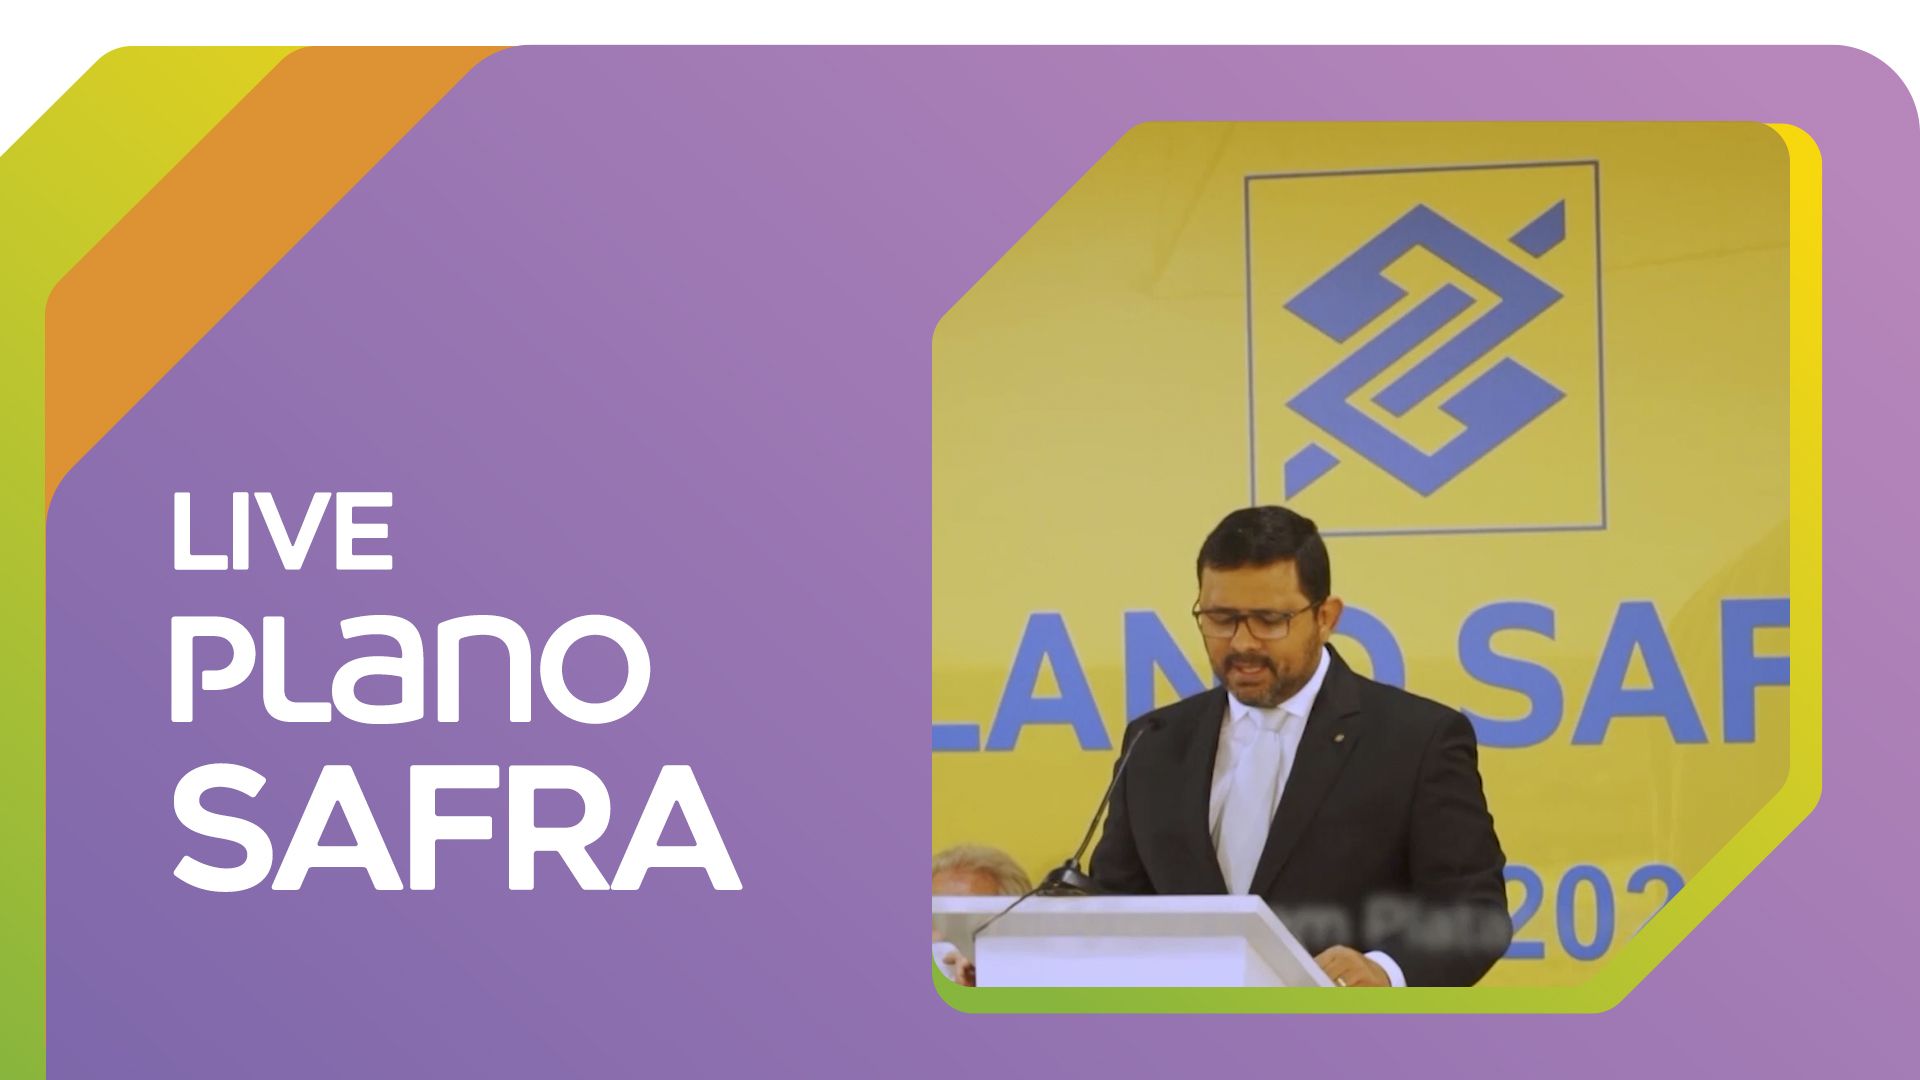 Live Plano Safra - Banco do Brasil